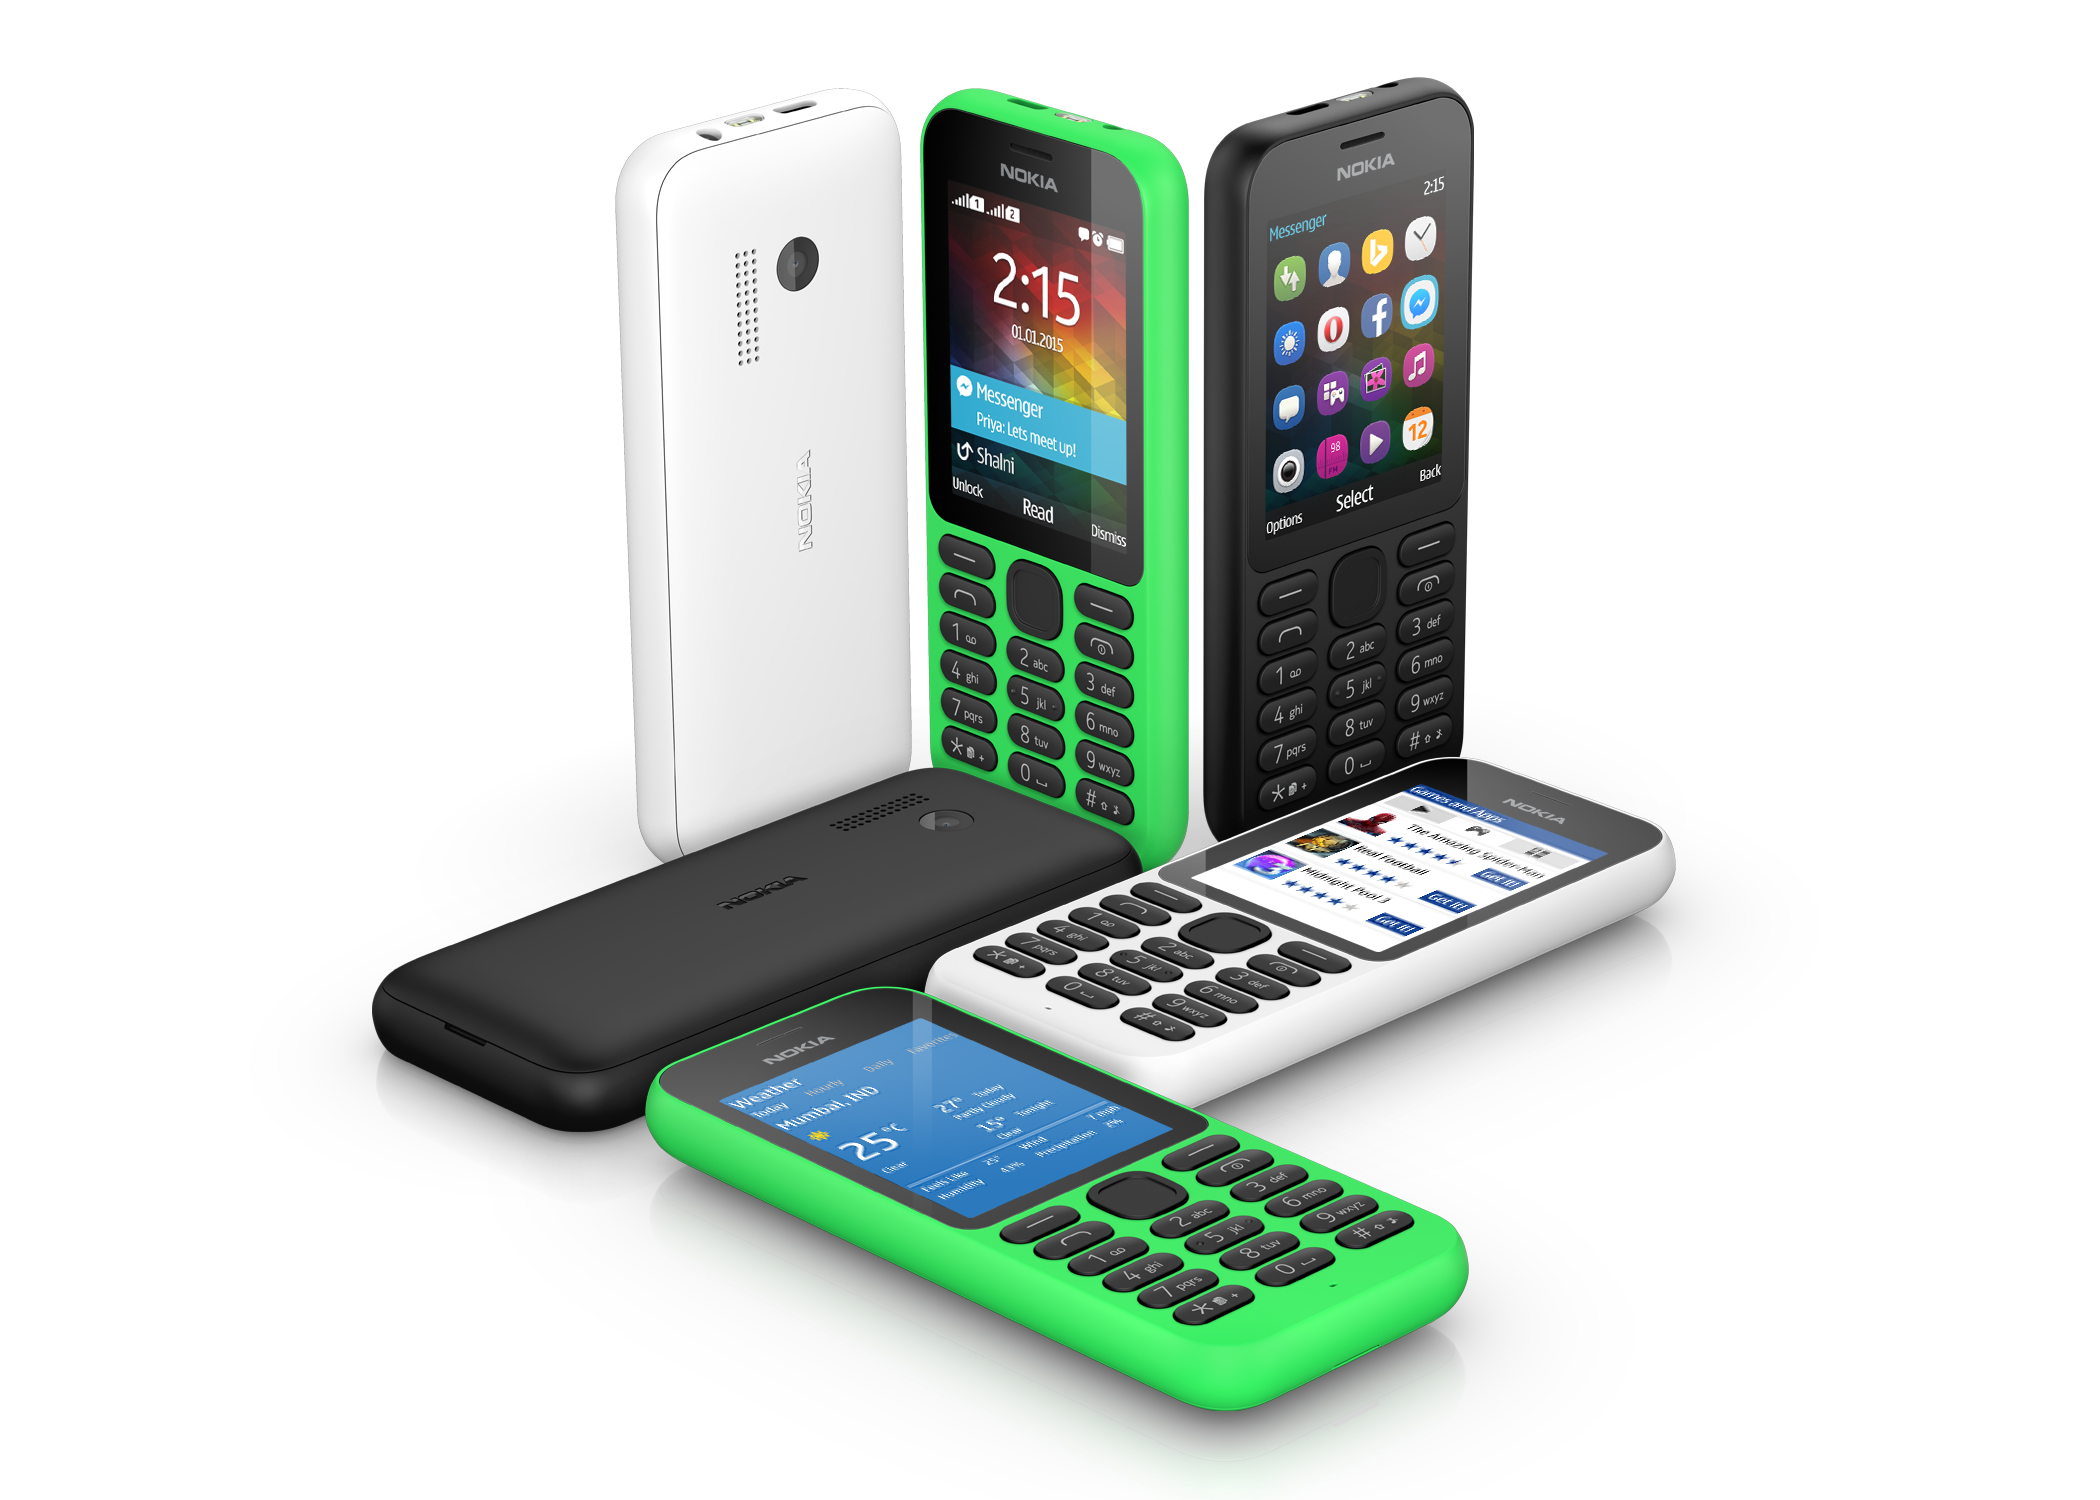 Купить дешевые телефоны в интернете. Нокиа 215. Телефон Nokia 215. Nokia 215 Green. Чехол для Nokia 215 -4g.